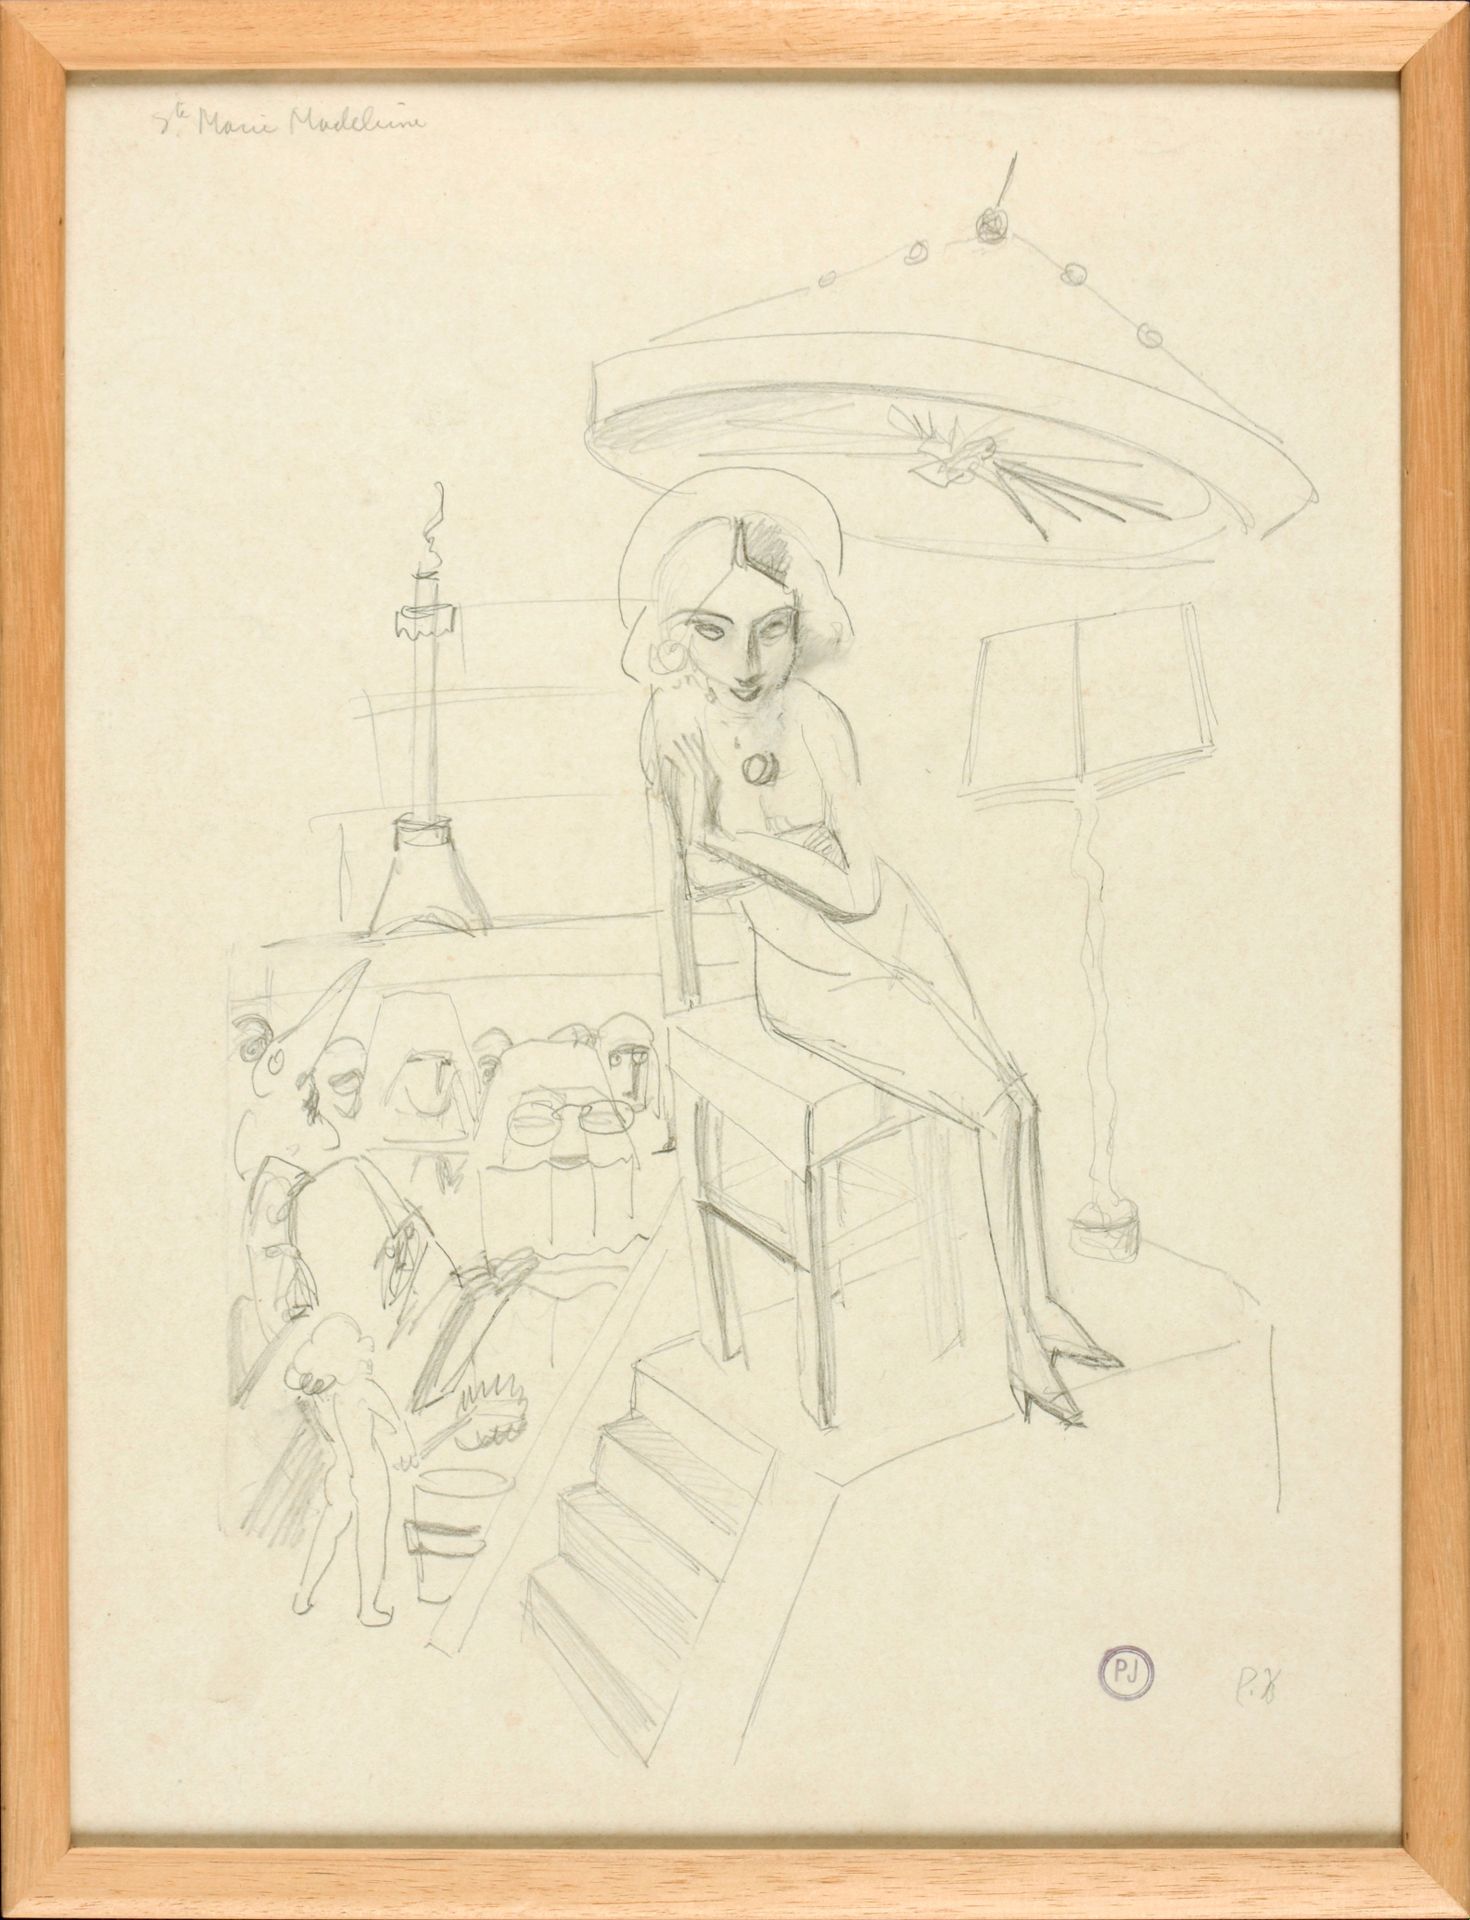 JOOSTENS, Paul (1889-1960) Santa María Magdalena

Tapa (36 x 27 cm), con un mono&hellip;